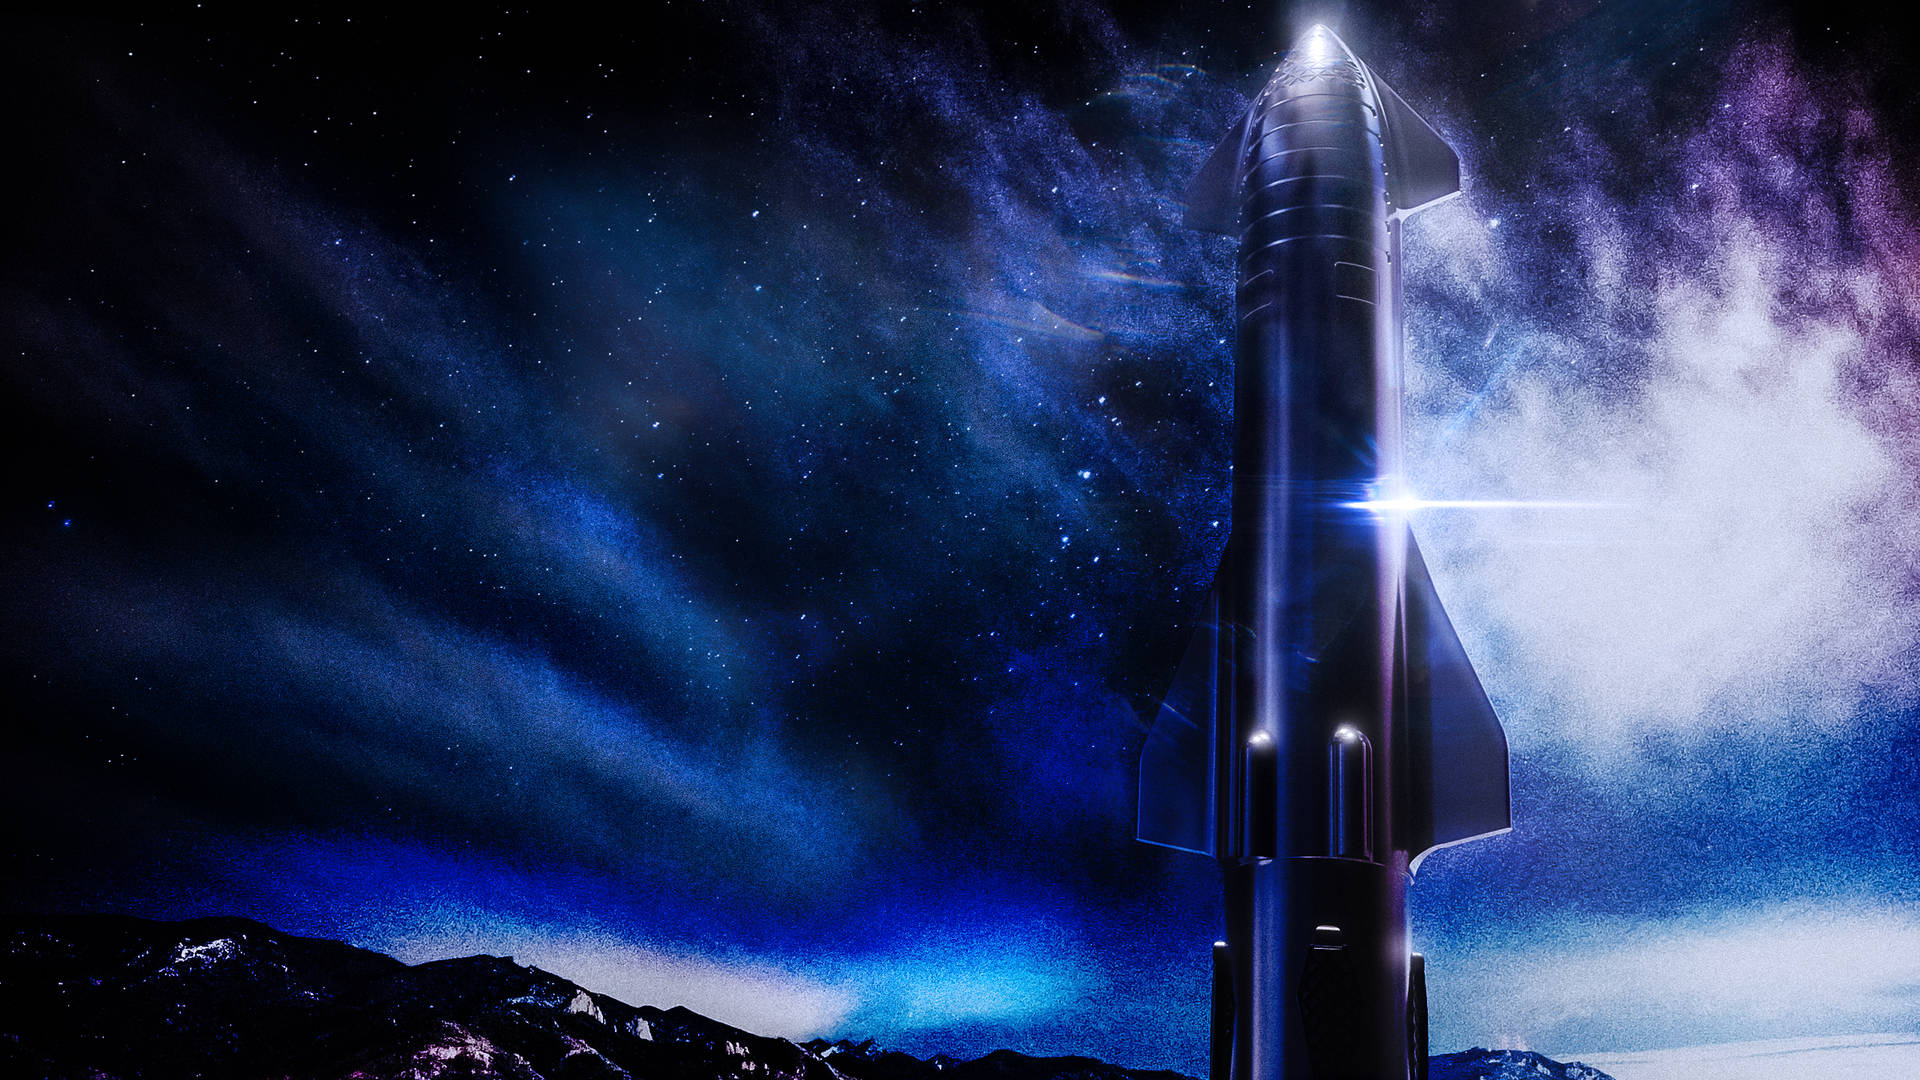 Spacex-stjerneskib 2560 X 1440 Wallpaper